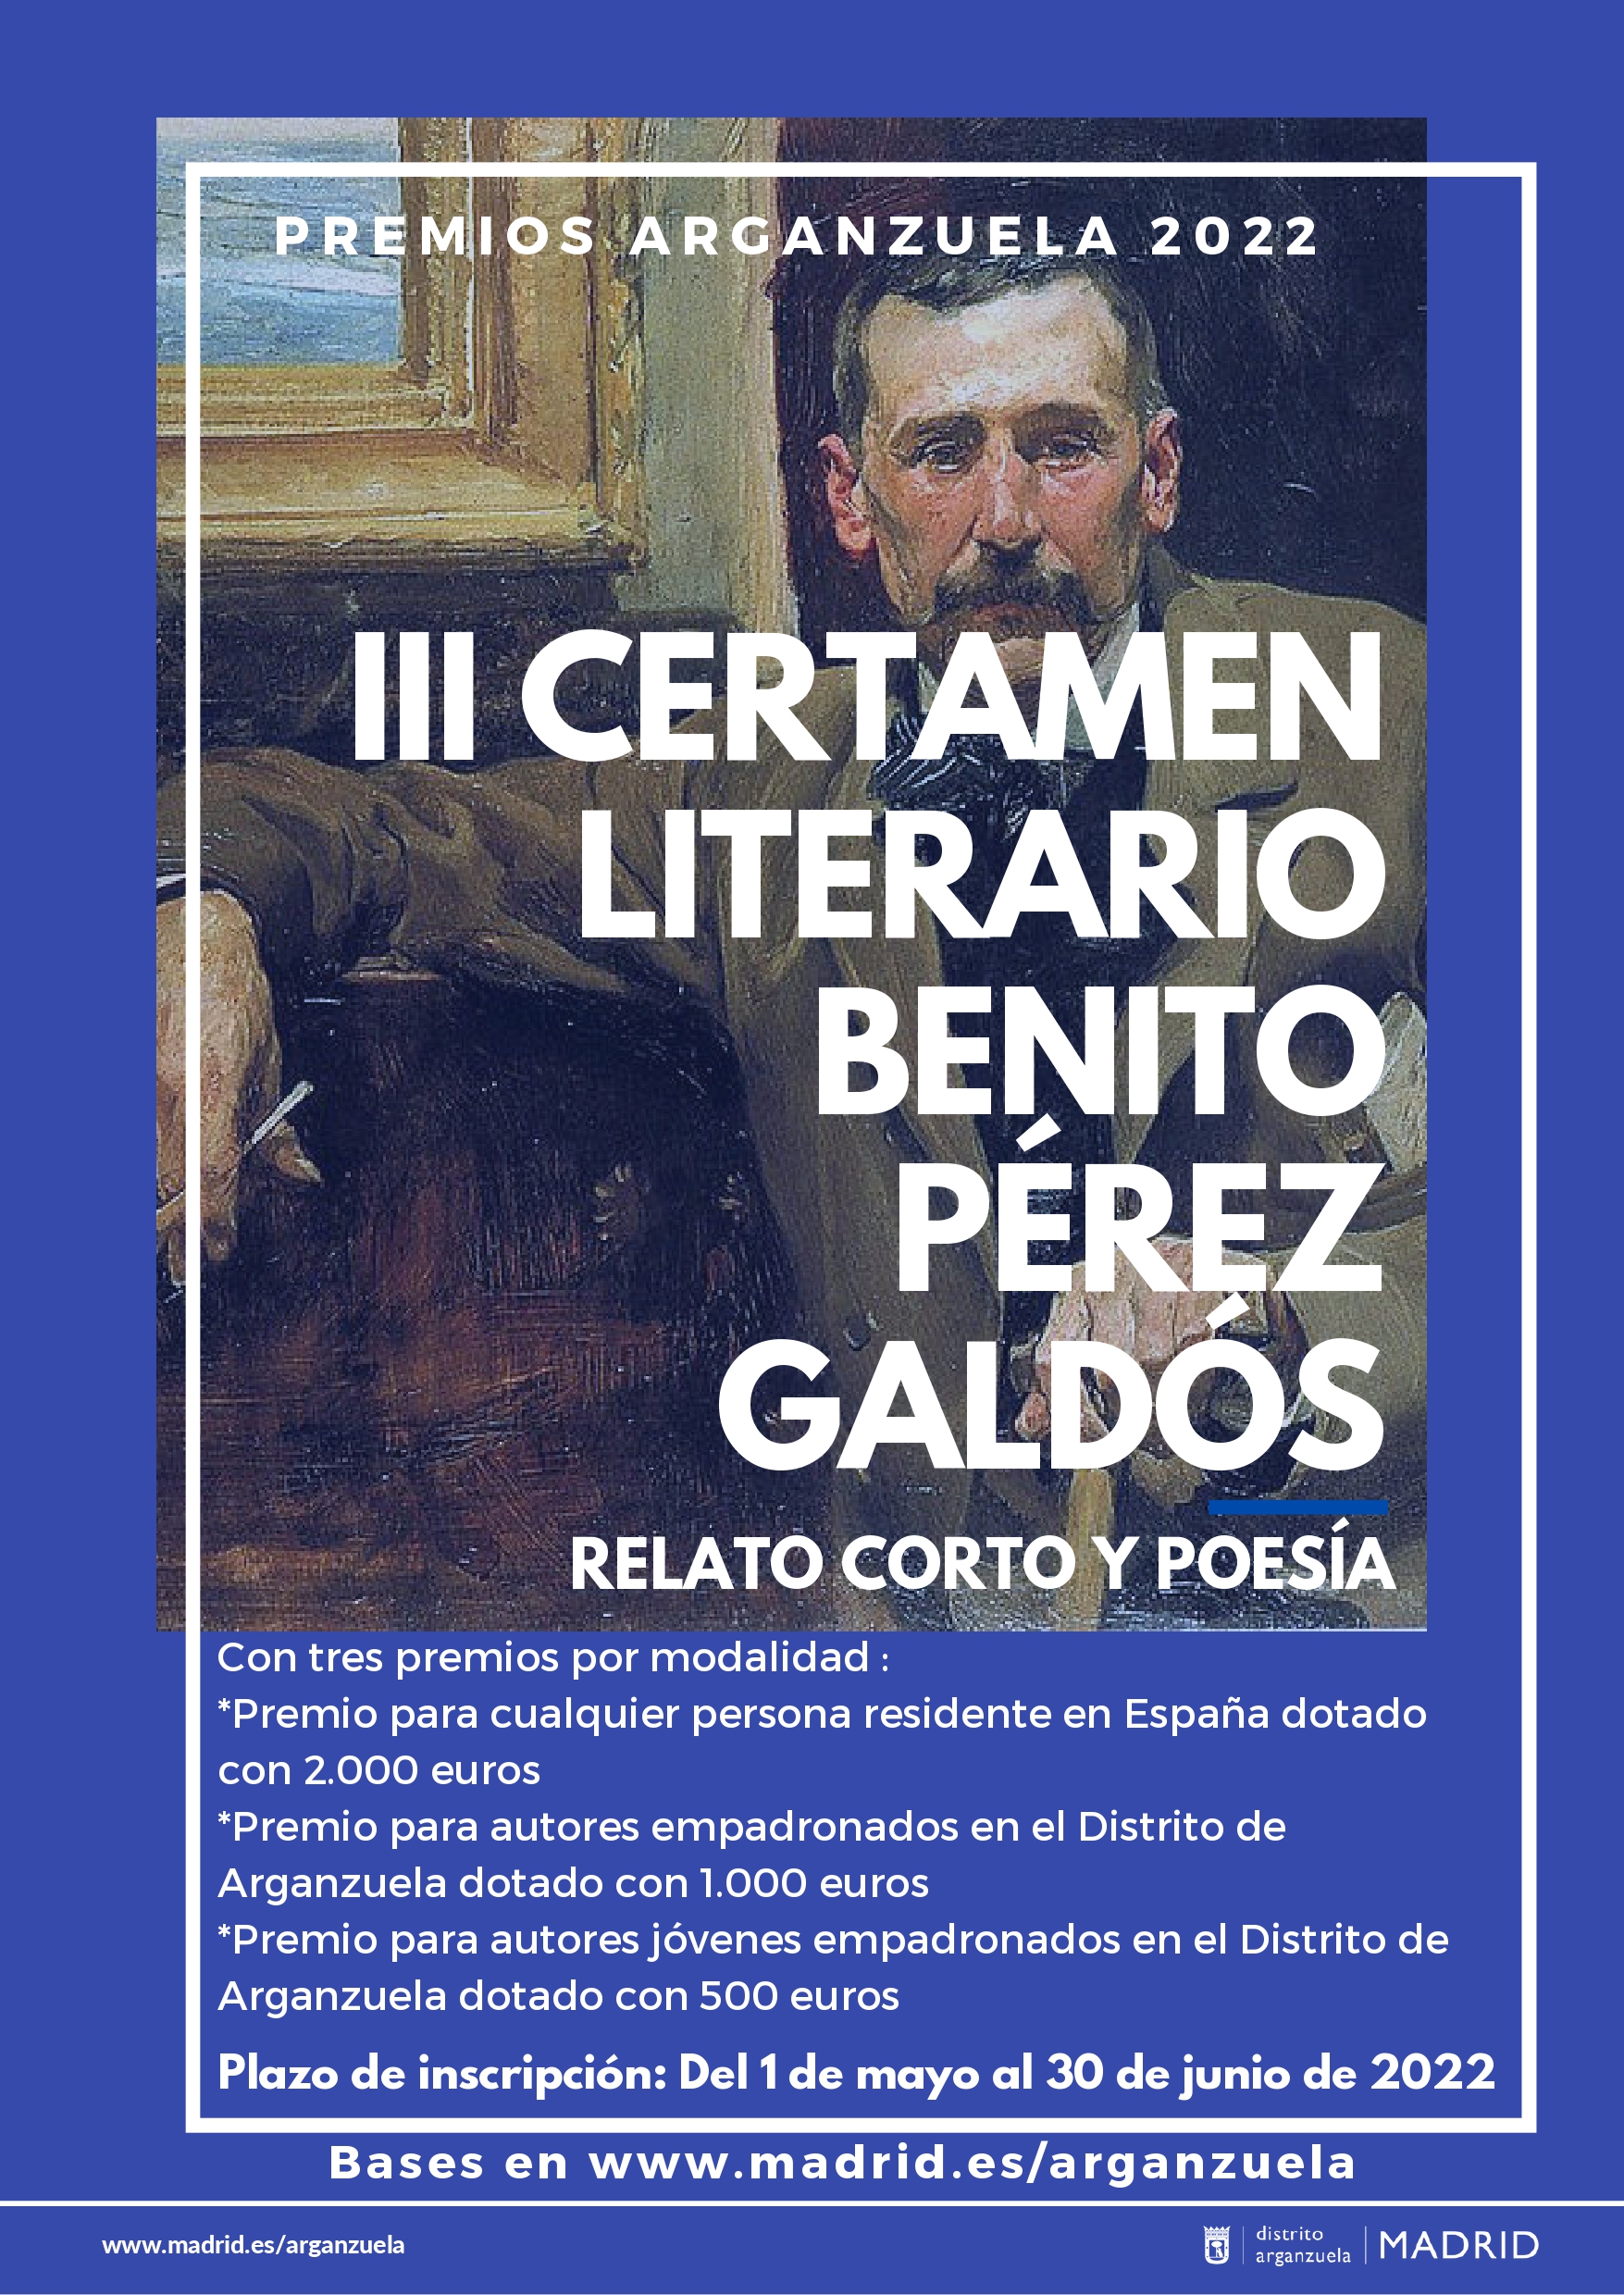 Cartel del III certamen literario Benito Pérez Galdos con retrato del escritor y fondo azul